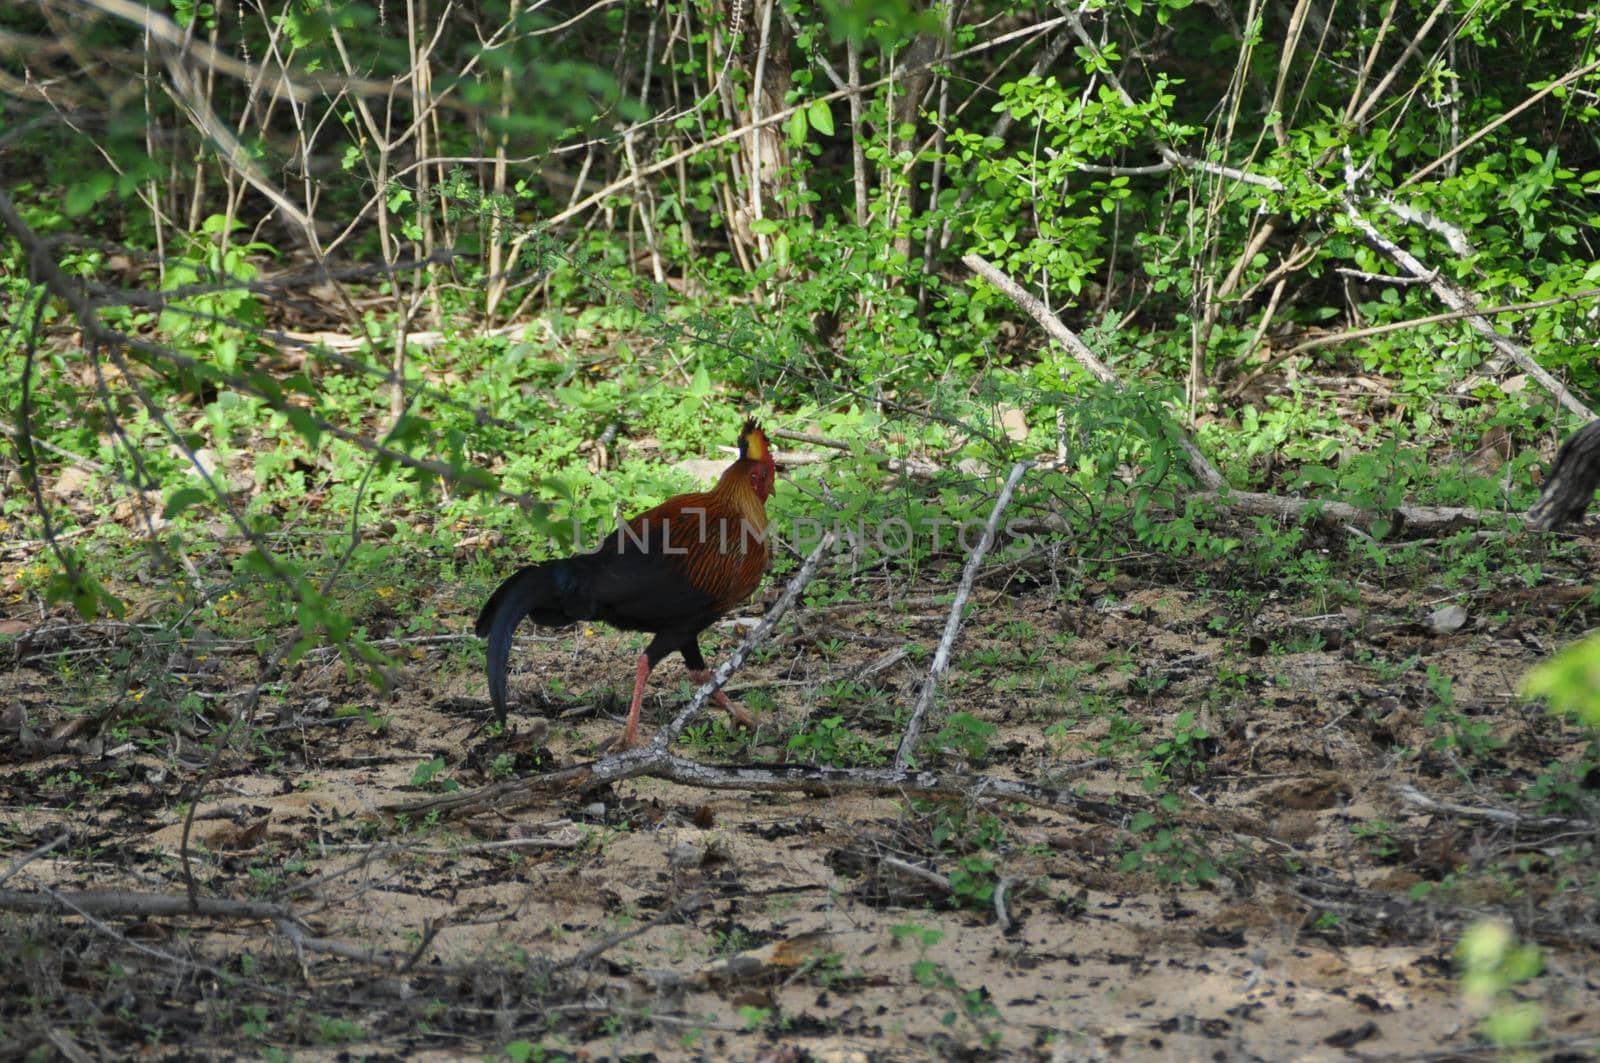 A Sri Lankan junglefowl in Yala National Park, Sri Lanka.